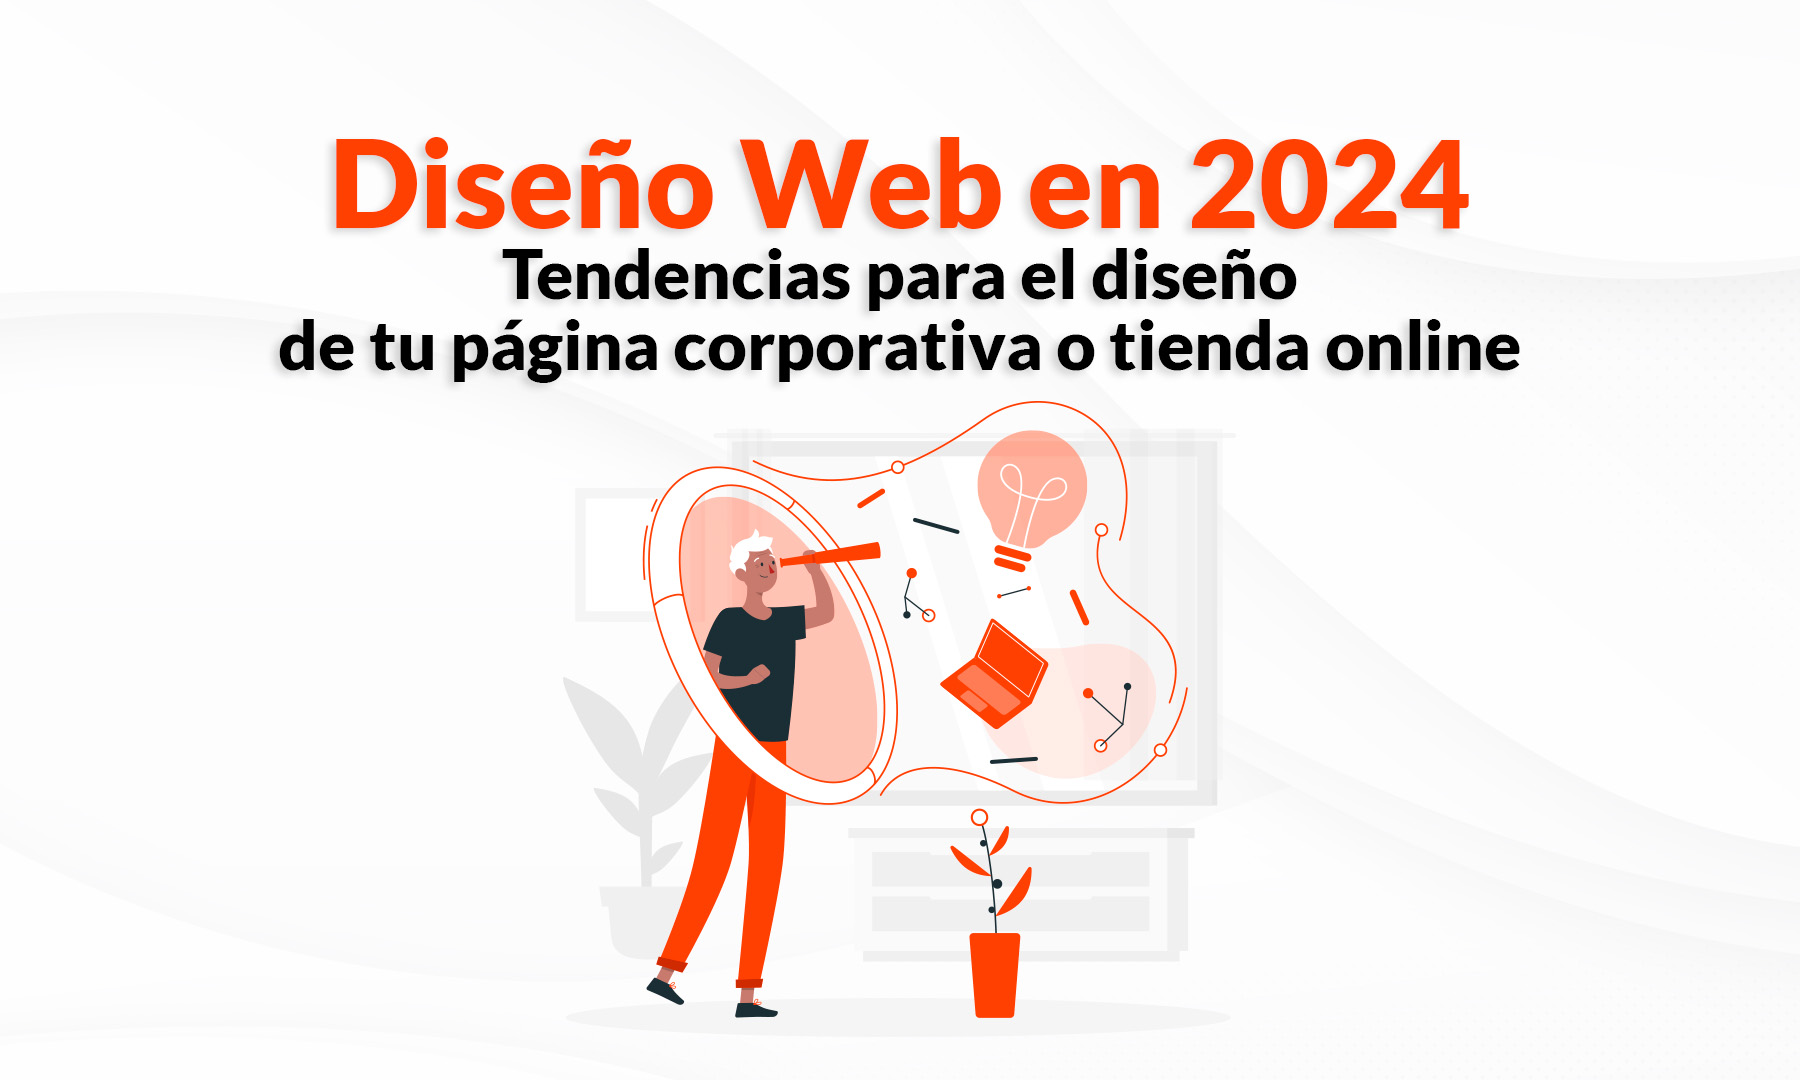 Tendencias de diseño web que dominarán el 2024